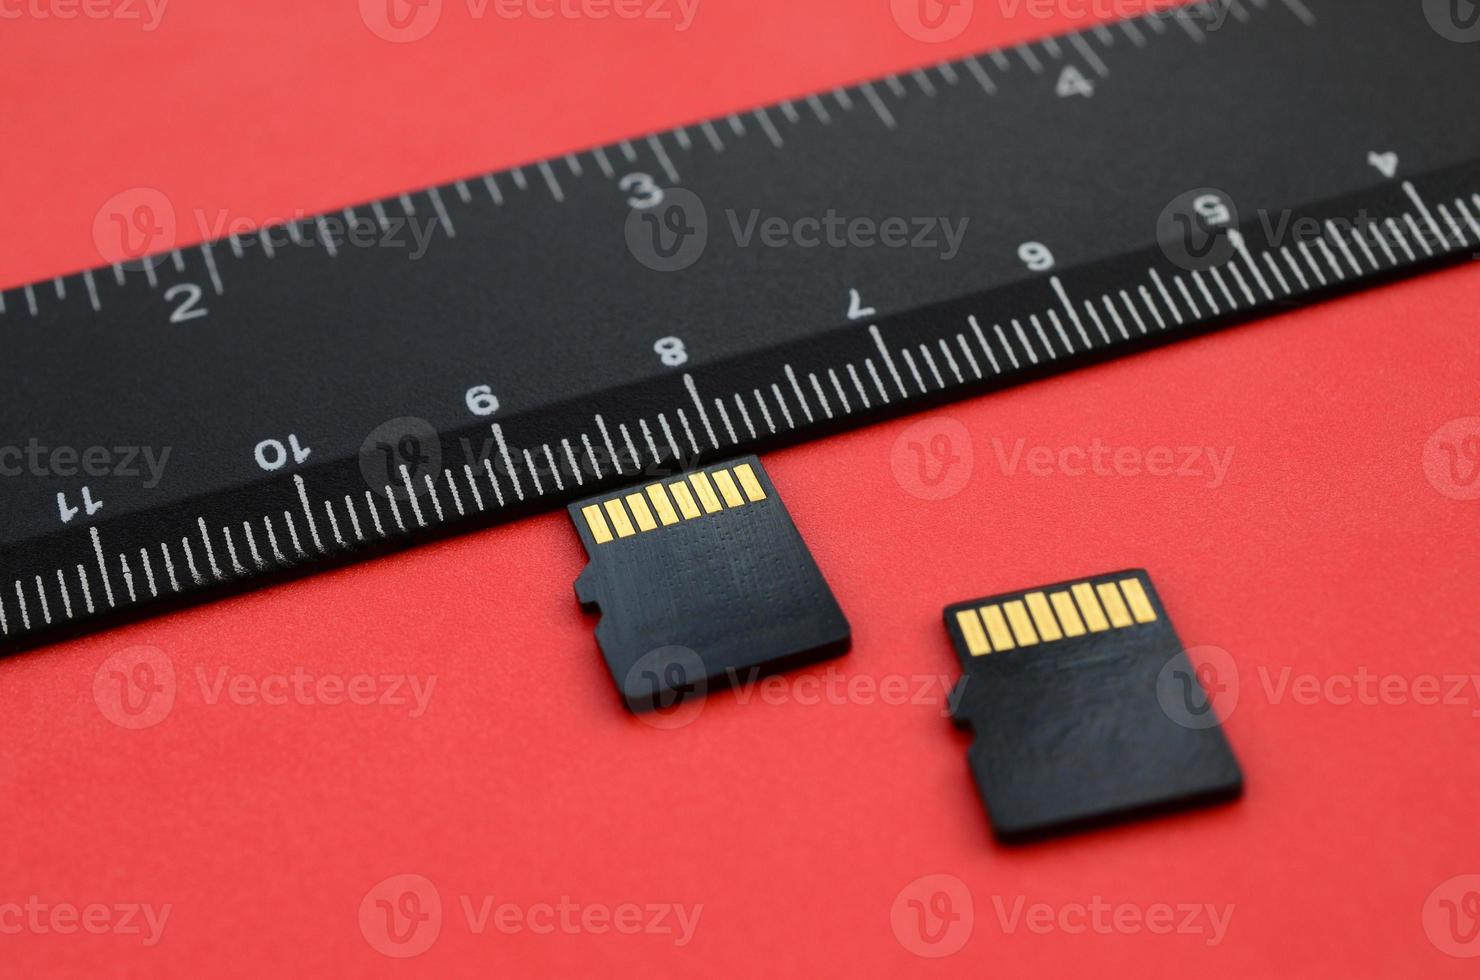 dos pequeñas tarjetas de memoria micro sd se encuentran sobre un fondo rojo junto a una regla negra. un pequeño y compacto almacén de datos e información foto